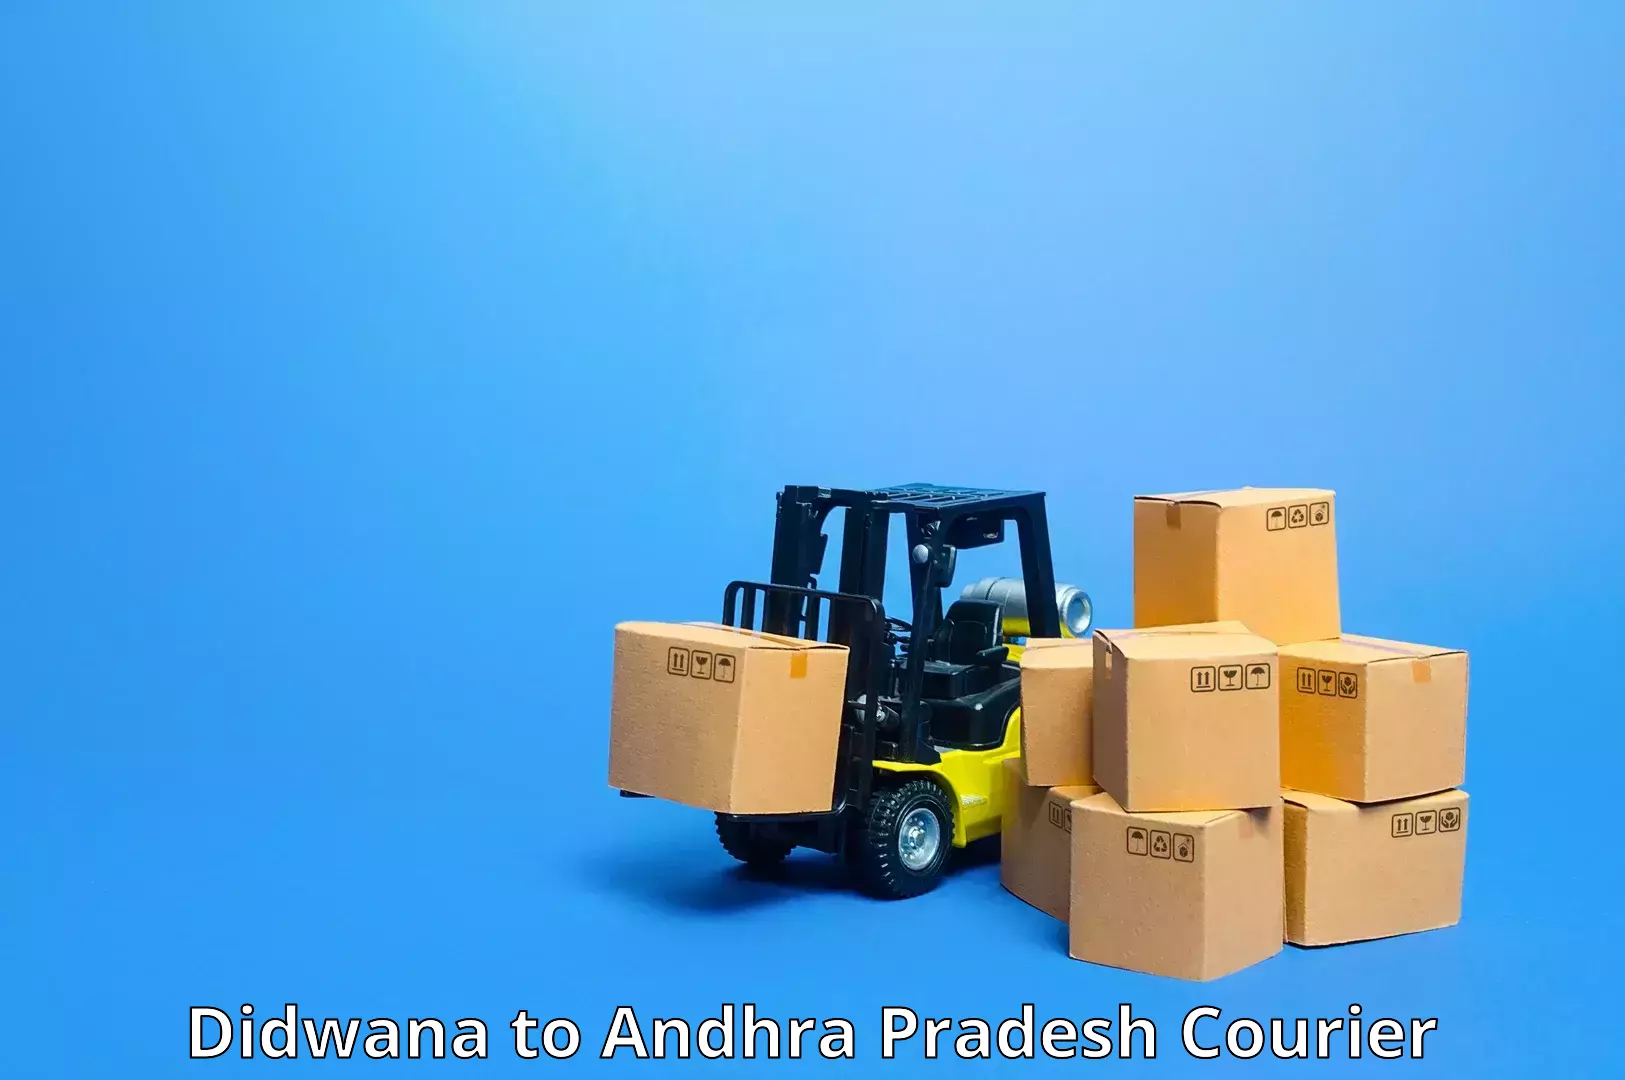 Urban courier service Didwana to Guntur